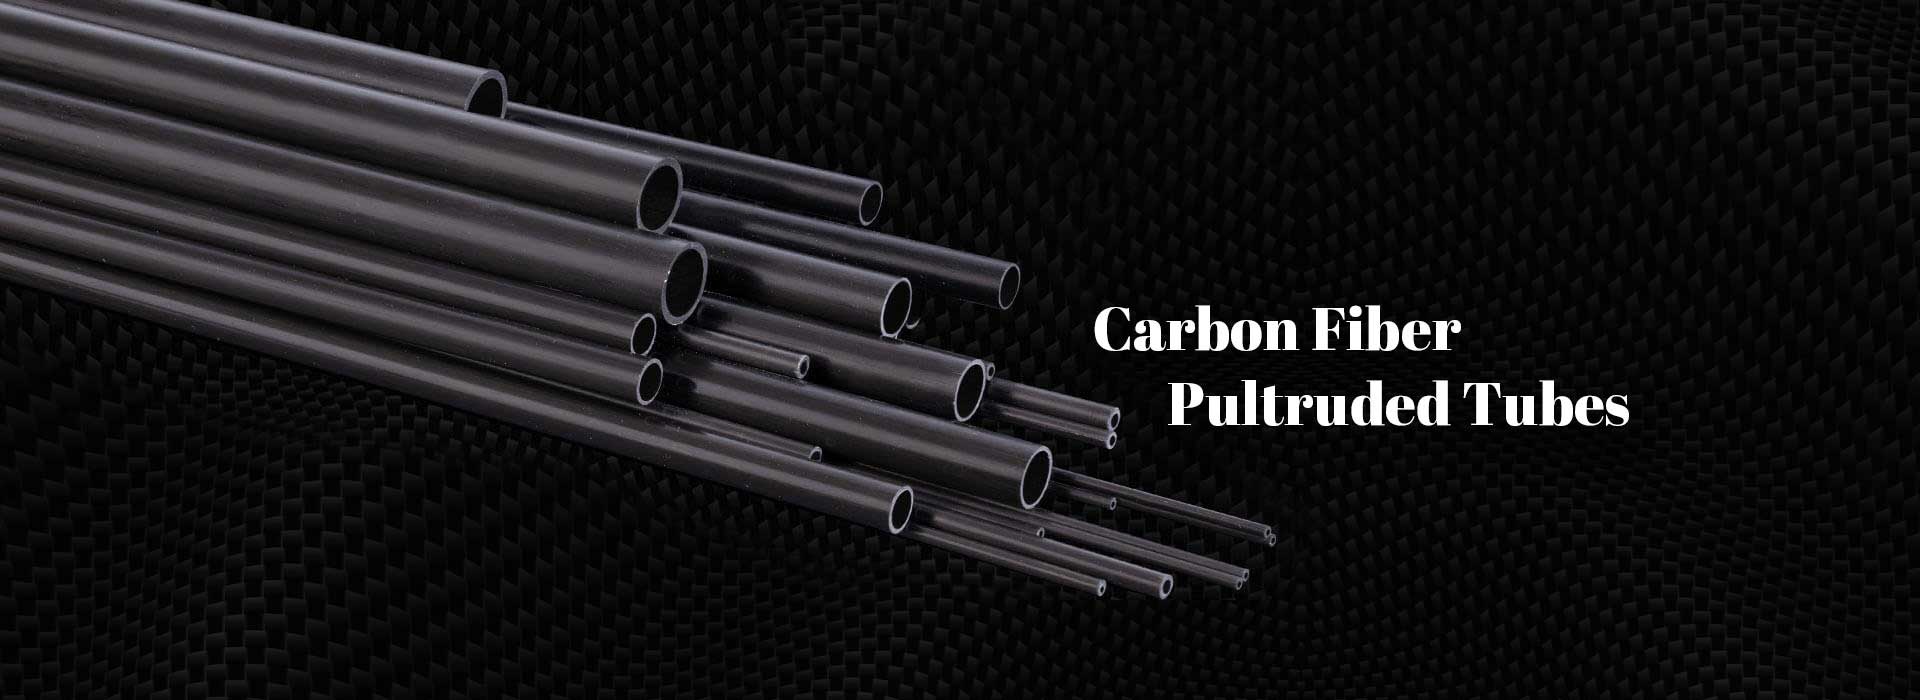 Carbon Fiber Pultruded Tubes